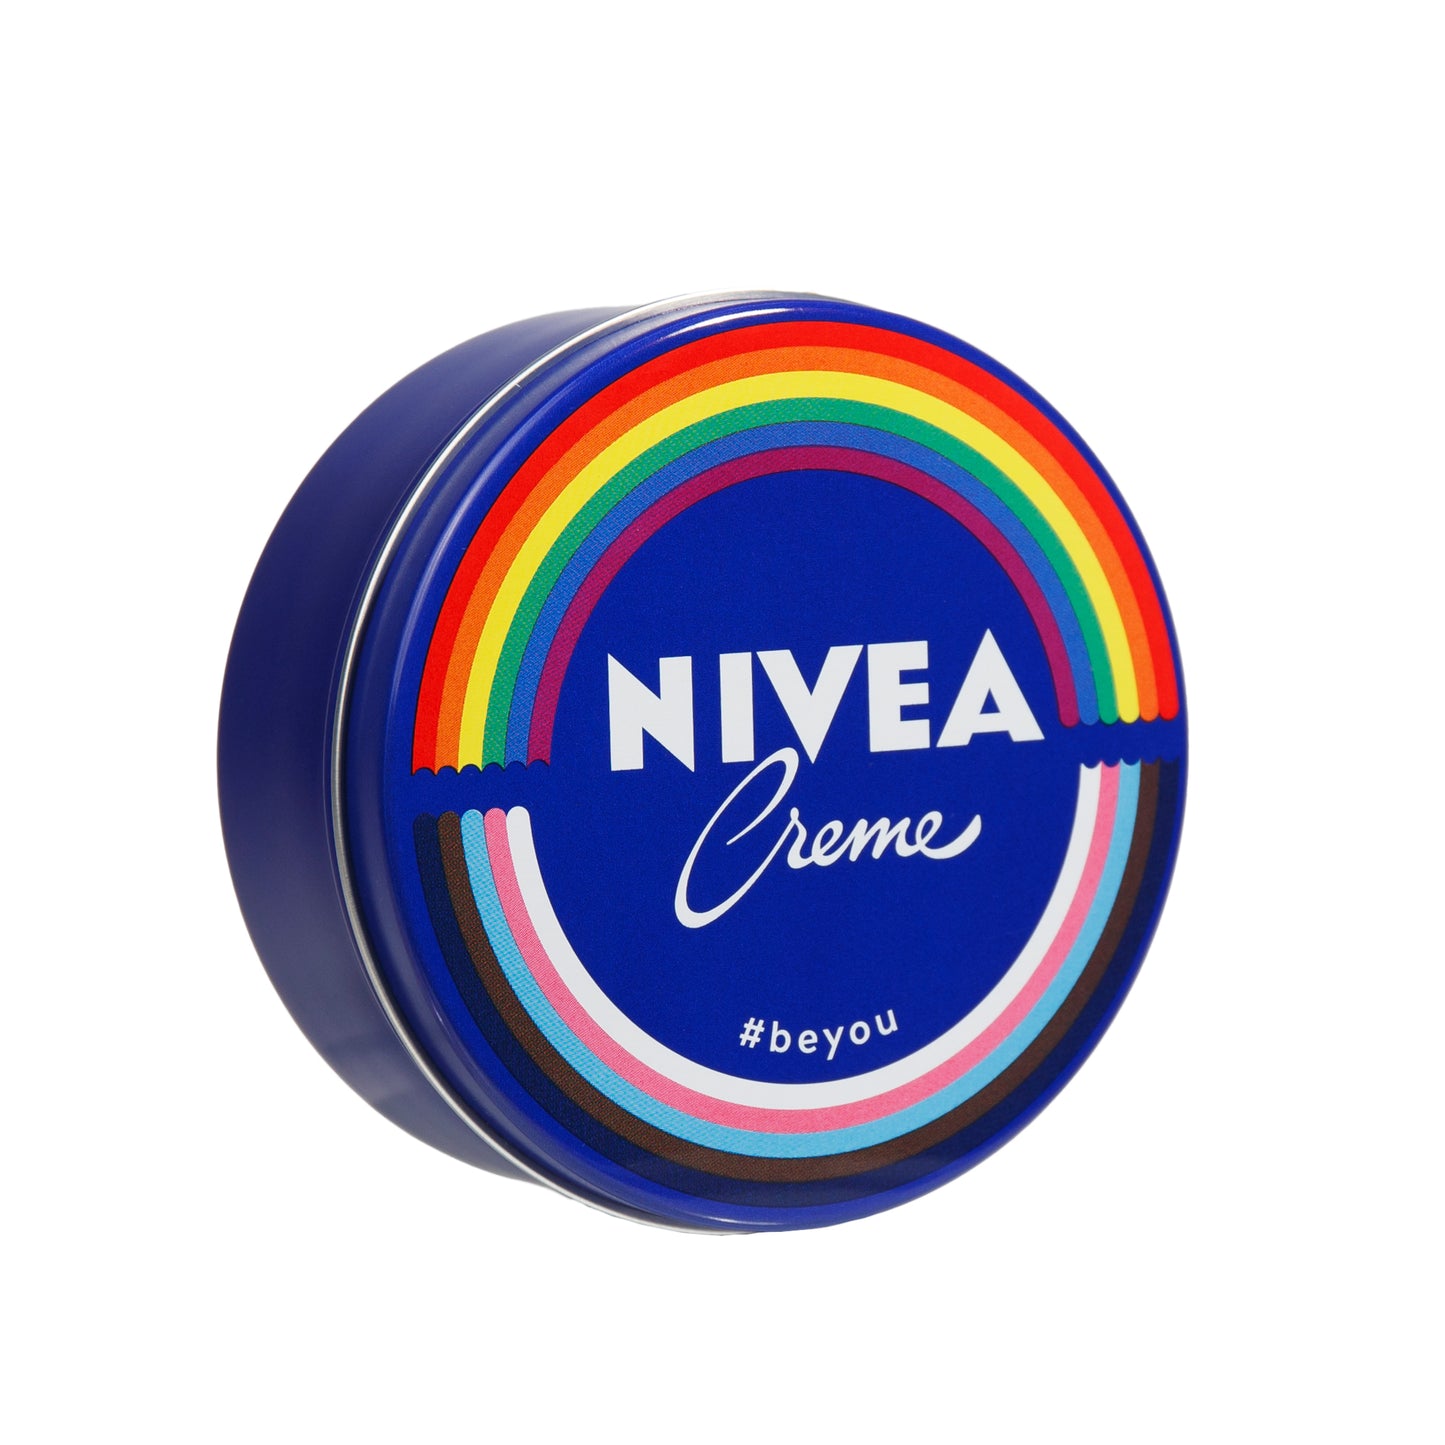 Primary Image of Nivea Creme